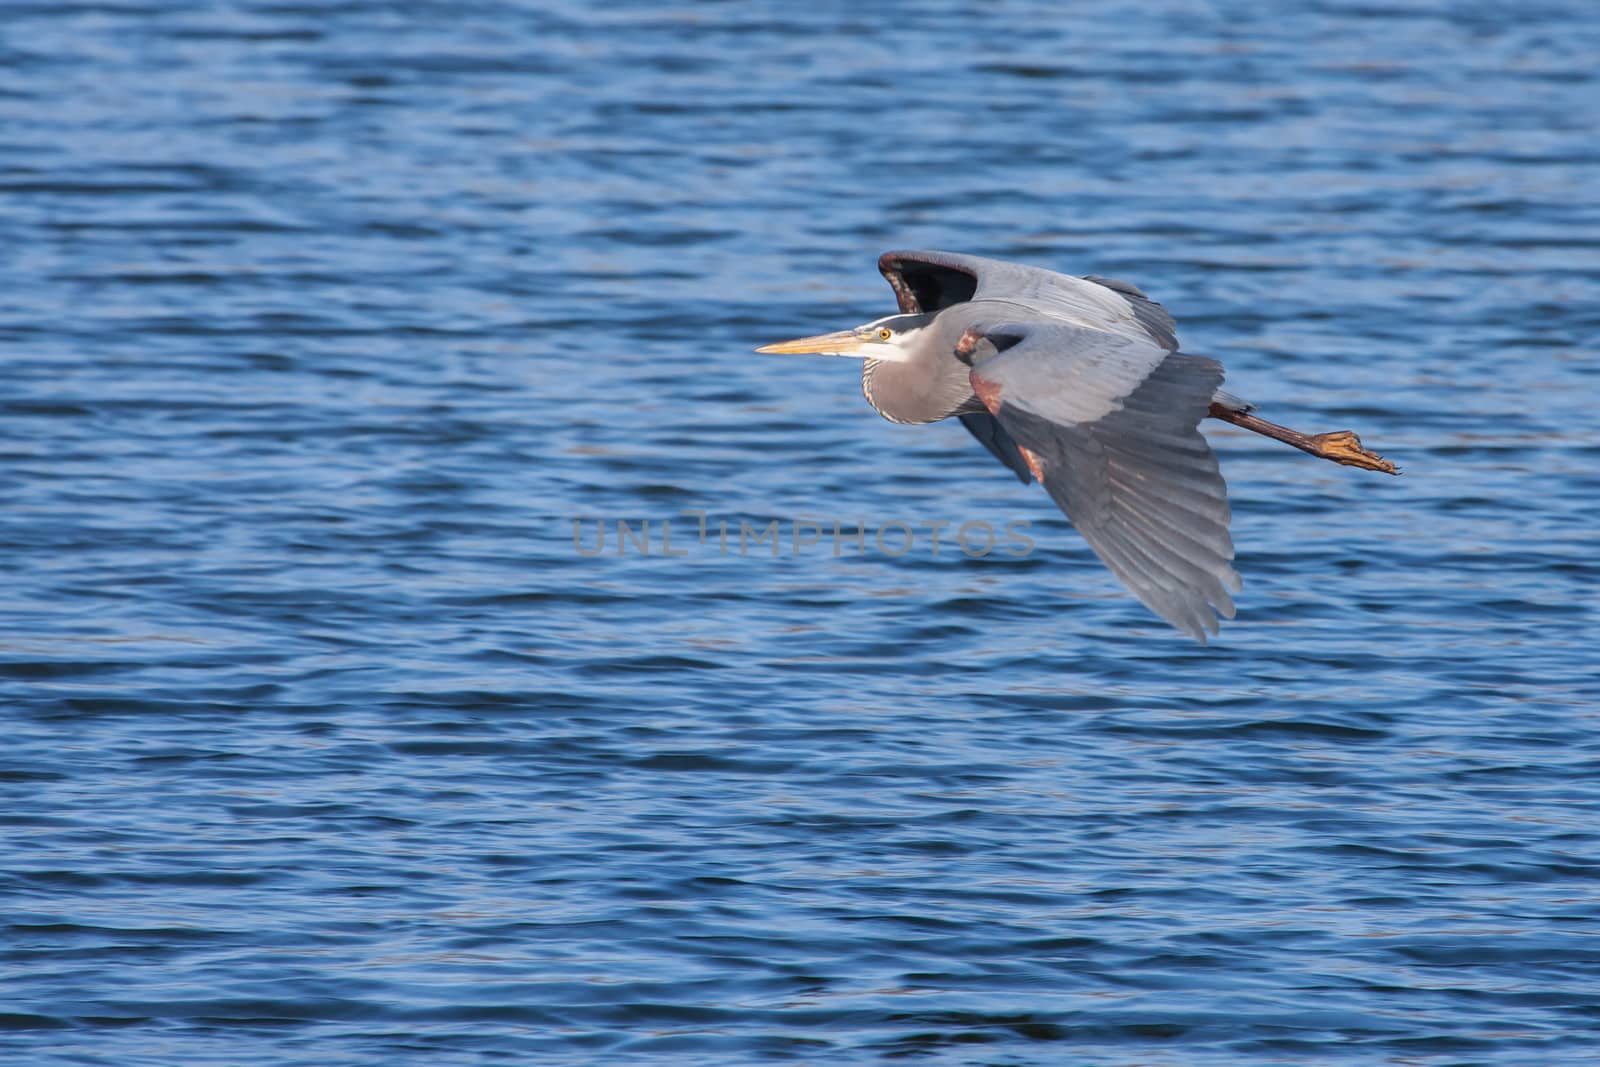 Great Blue Heron in Flight by Coffee999